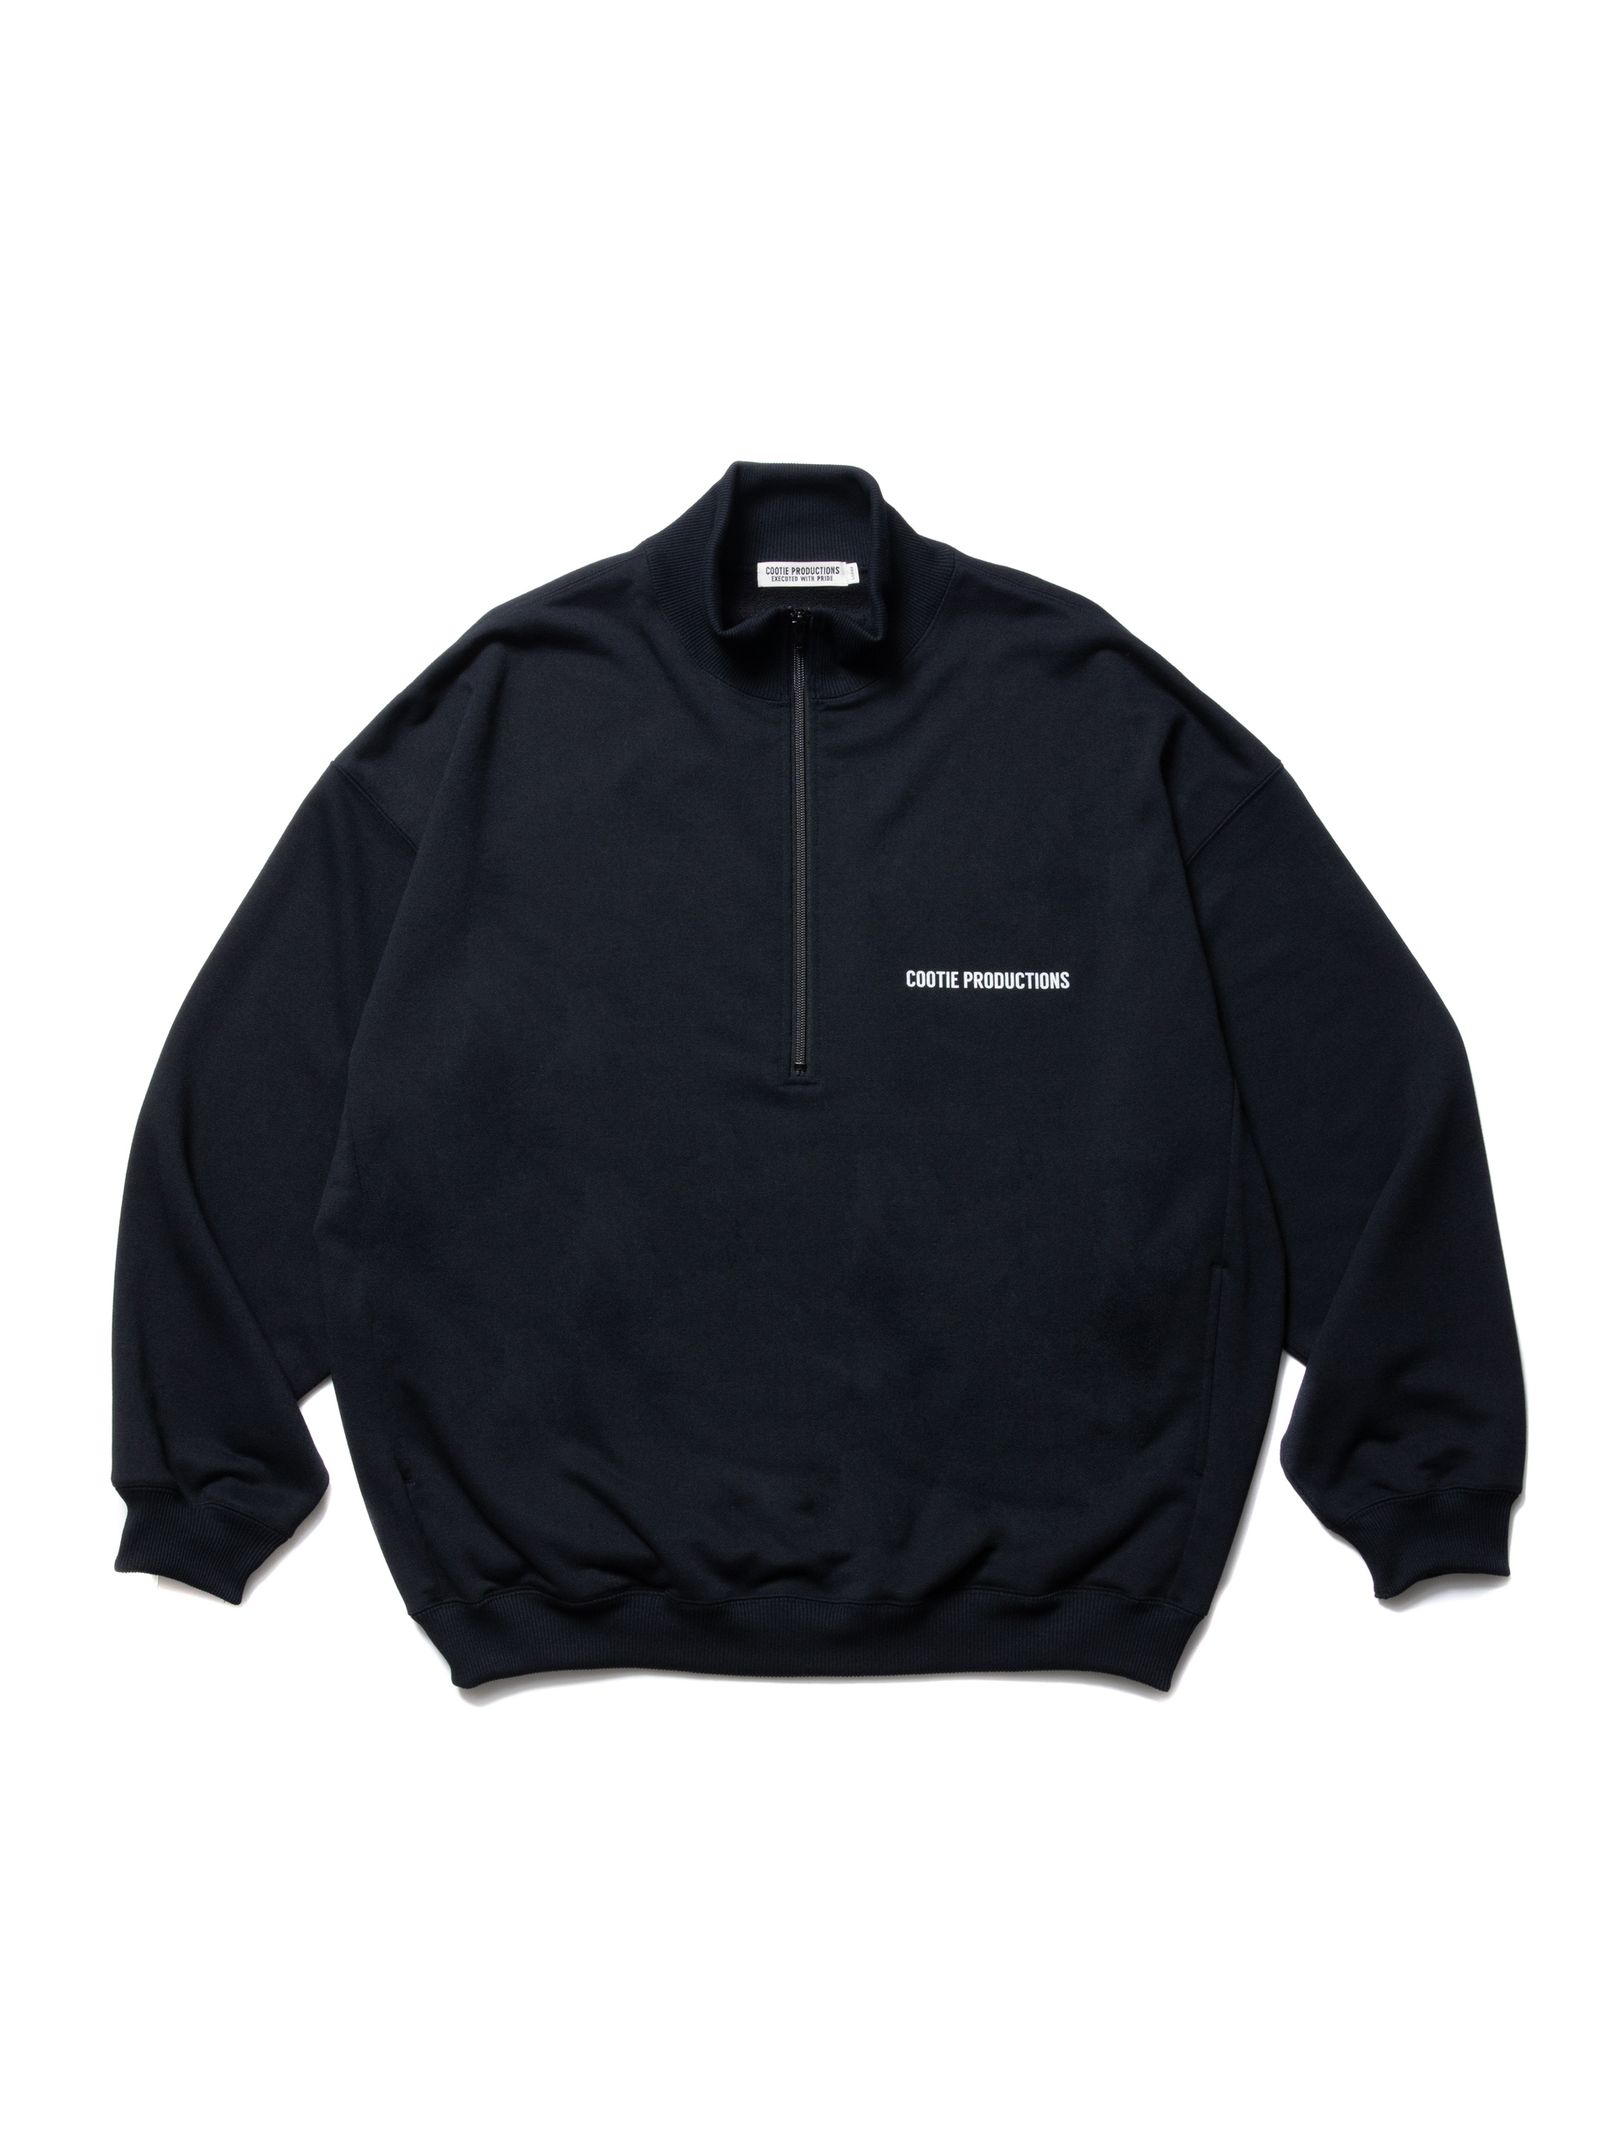 Dry Tech Sweat Half Zip Pullover / BLACK - S